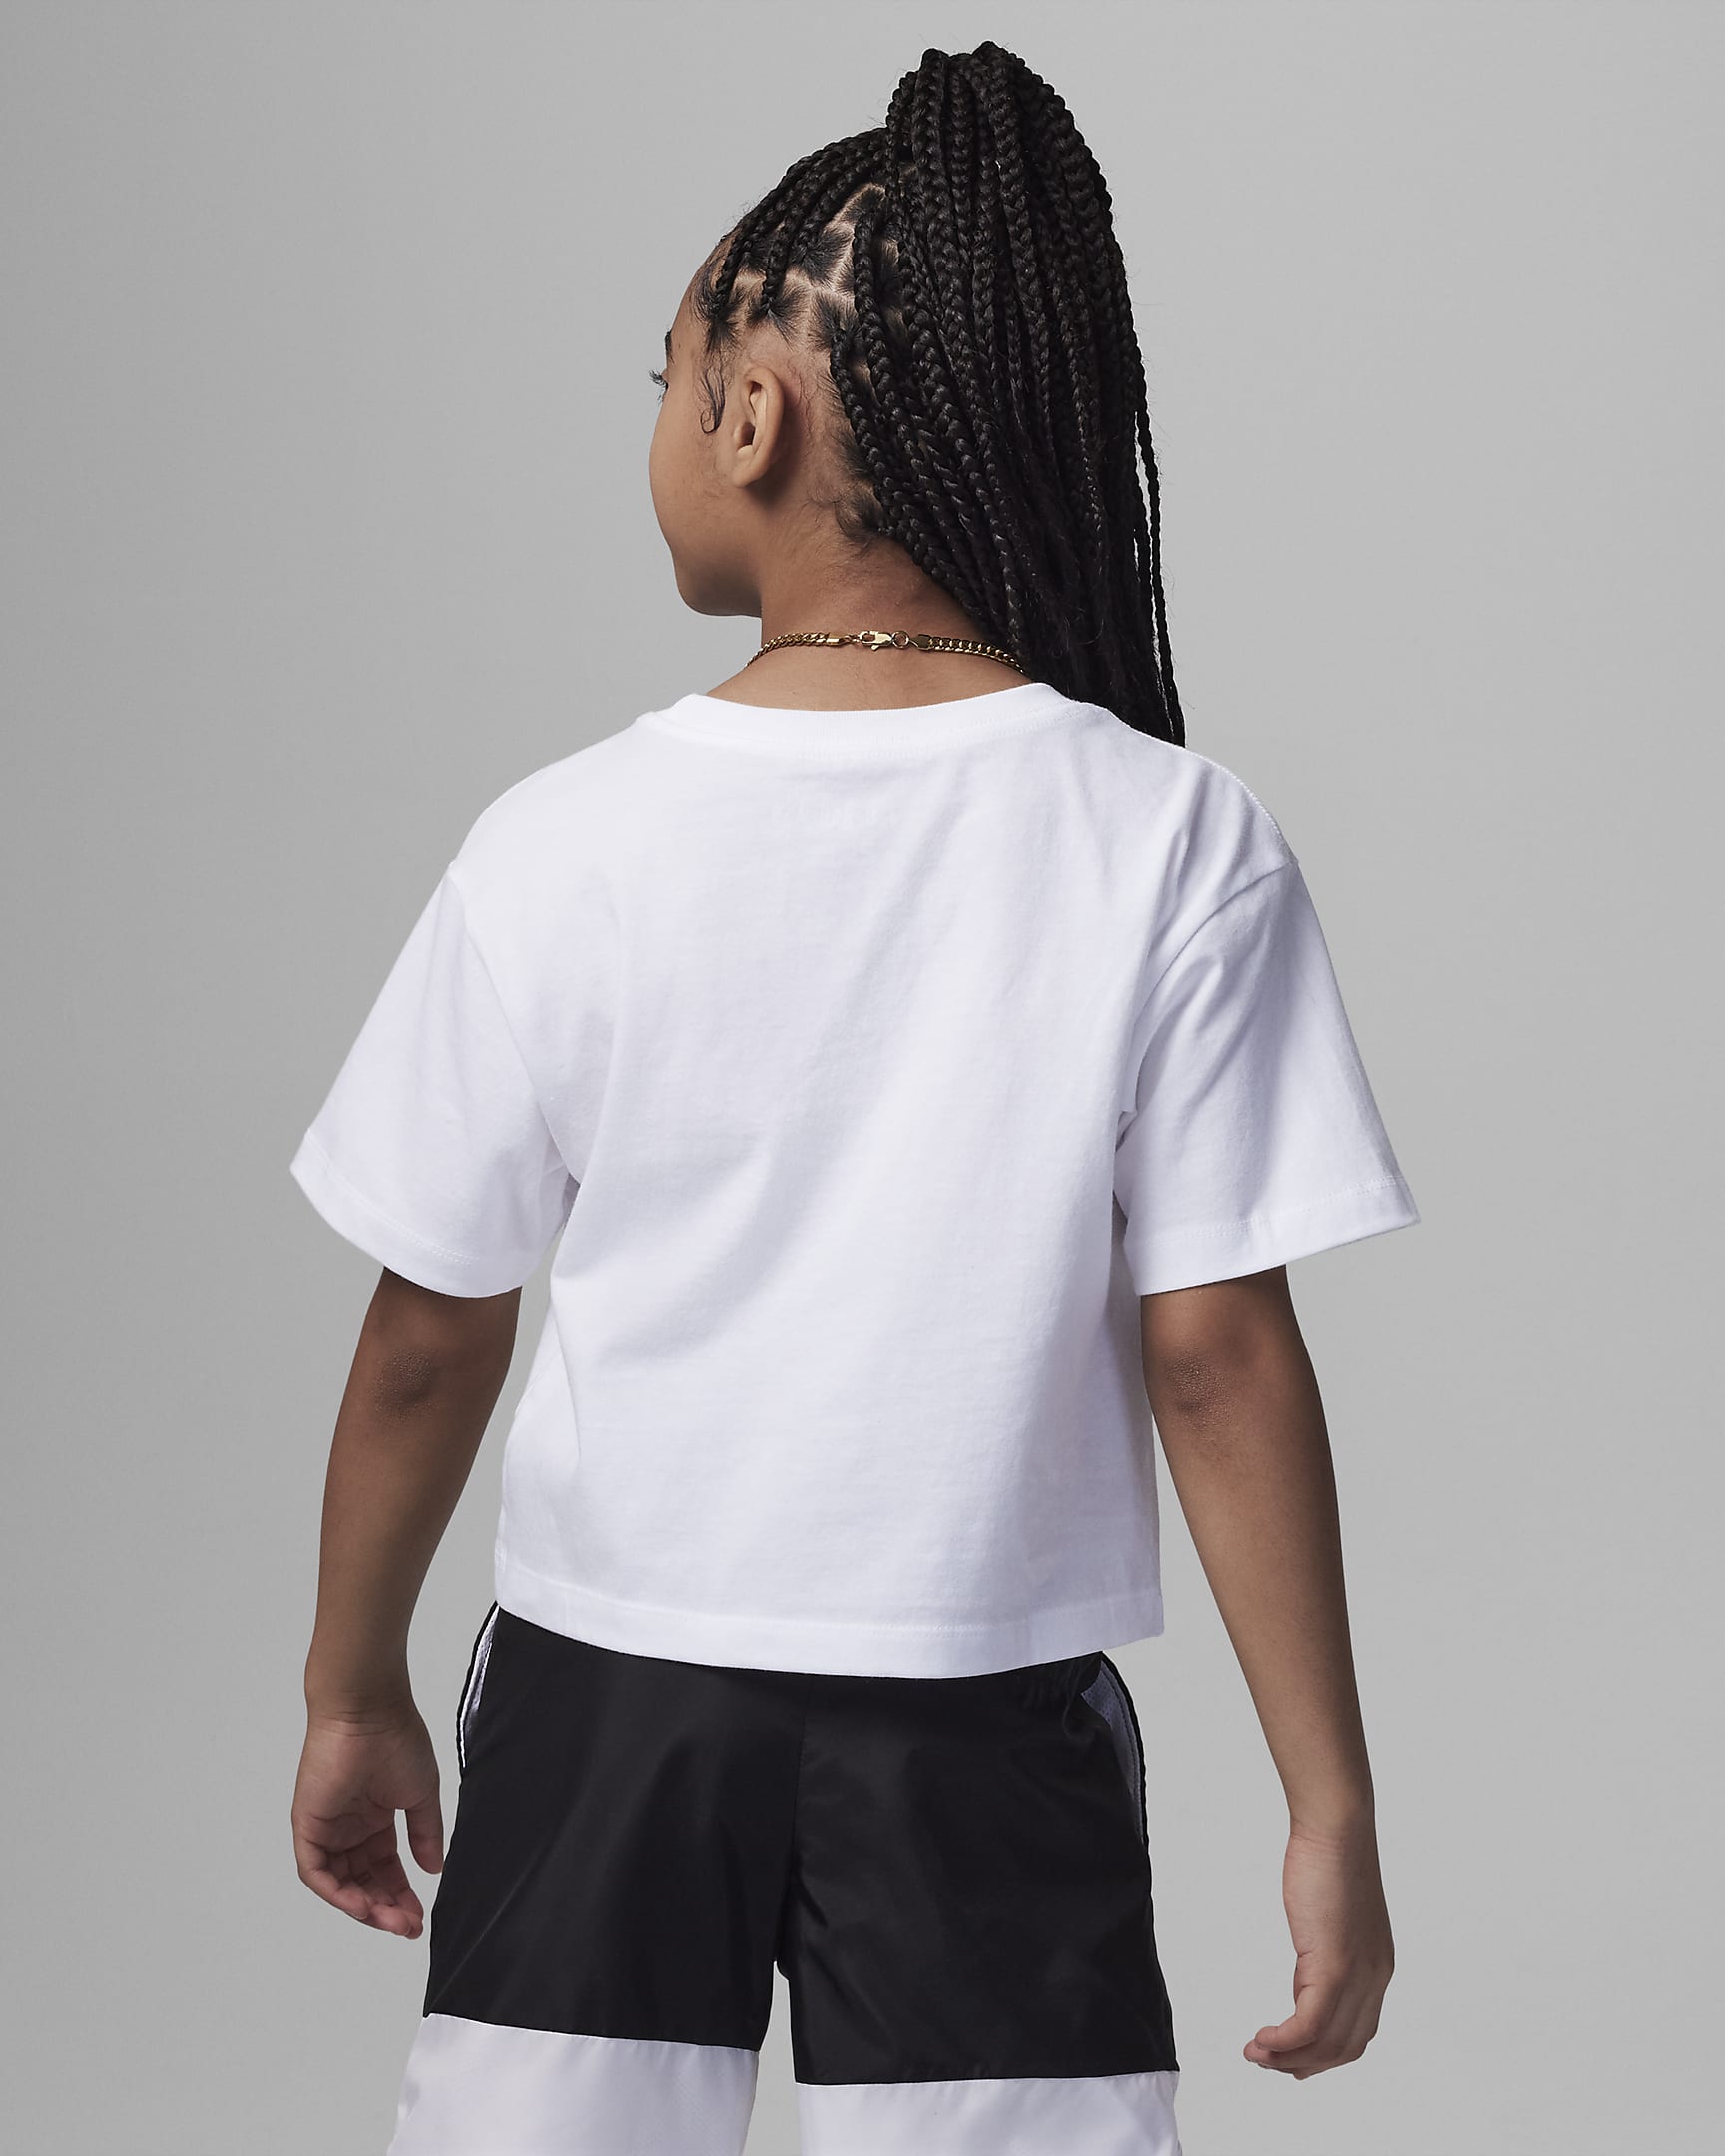 Jordan 23 Air Waves Tee Little Kids' T-Shirt. Nike.com